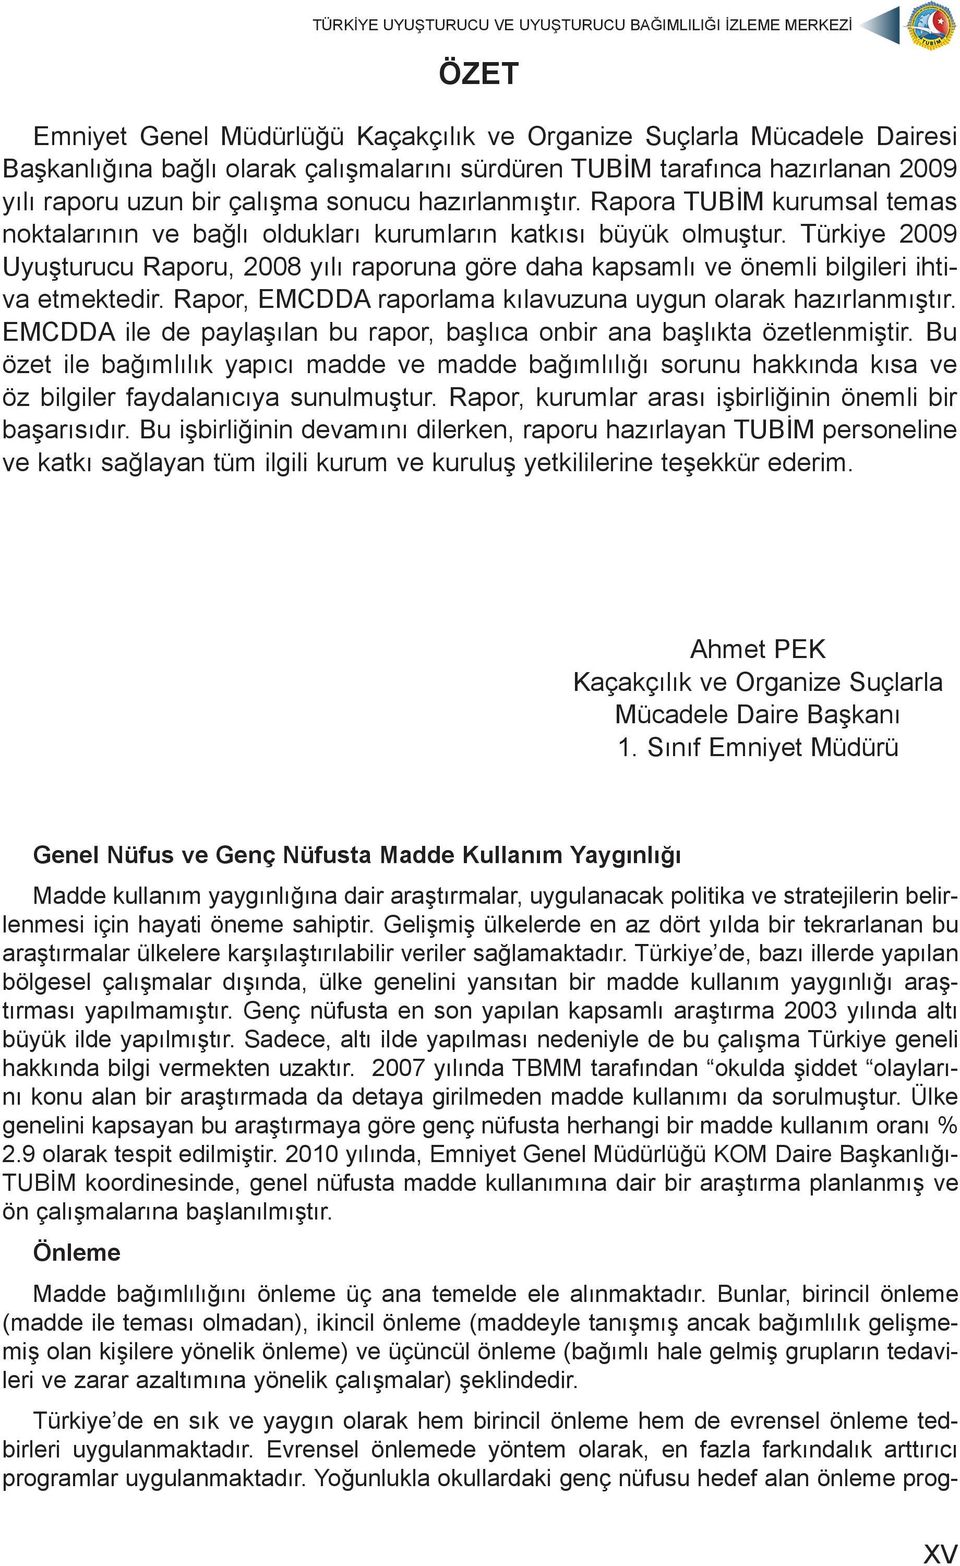 Türkiye 2009 Uyuşturucu Raporu, 2008 yılı raporuna göre daha kapsamlı ve önemli bilgileri ihtiva etmektedir. Rapor, EMCDDA raporlama kılavuzuna uygun olarak hazırlanmıştır.